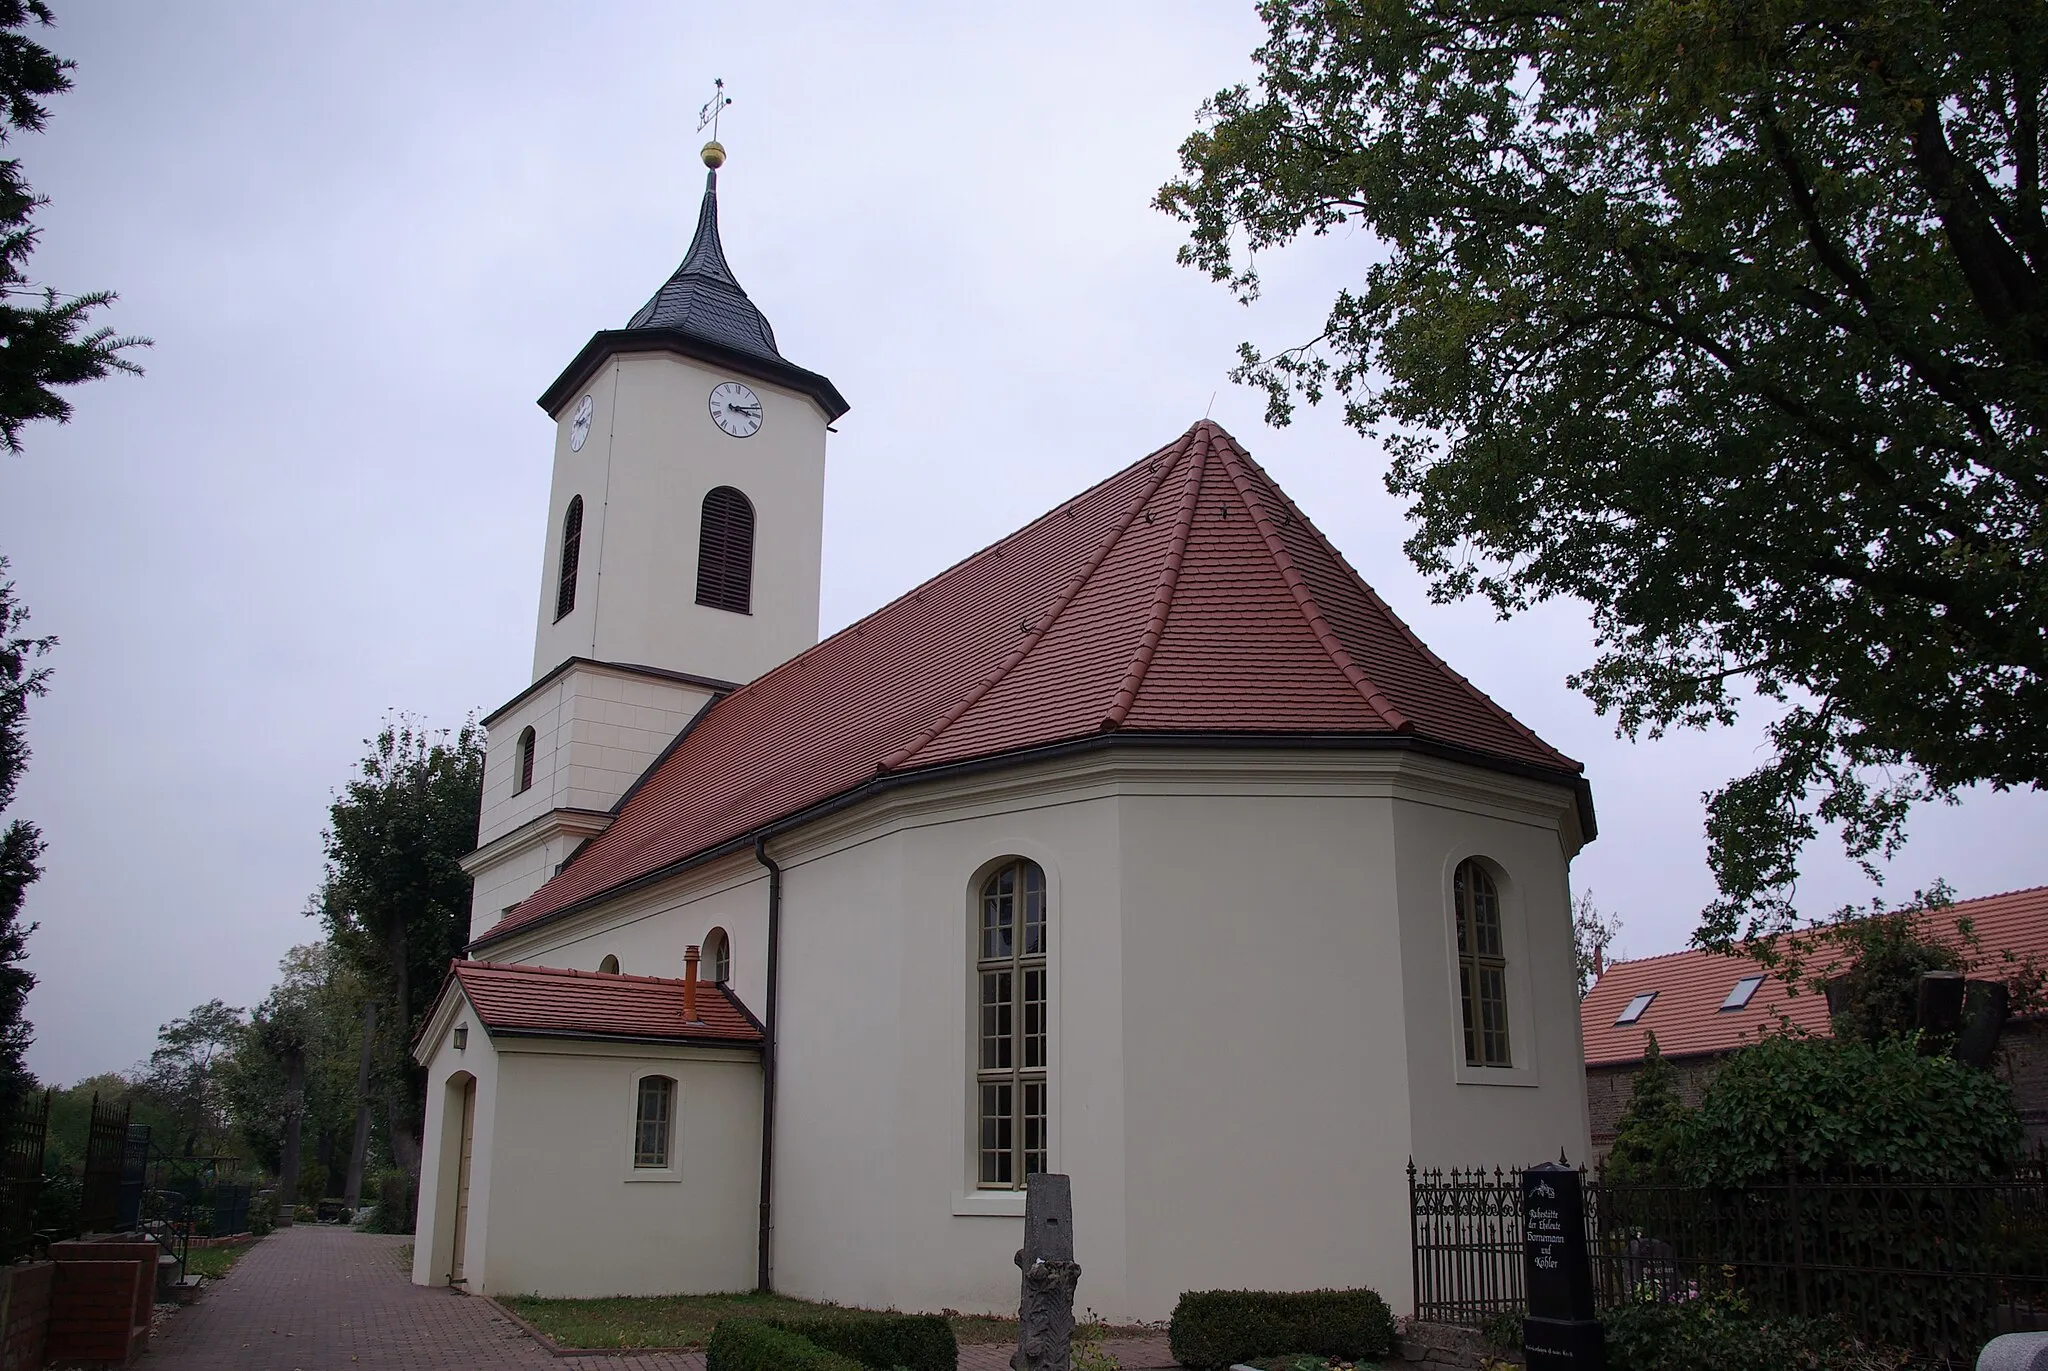 Photo showing: Wustermark in Brandenburg. Die Kirche wurde 1793 erbaut und steht unter Denkmalschutz.